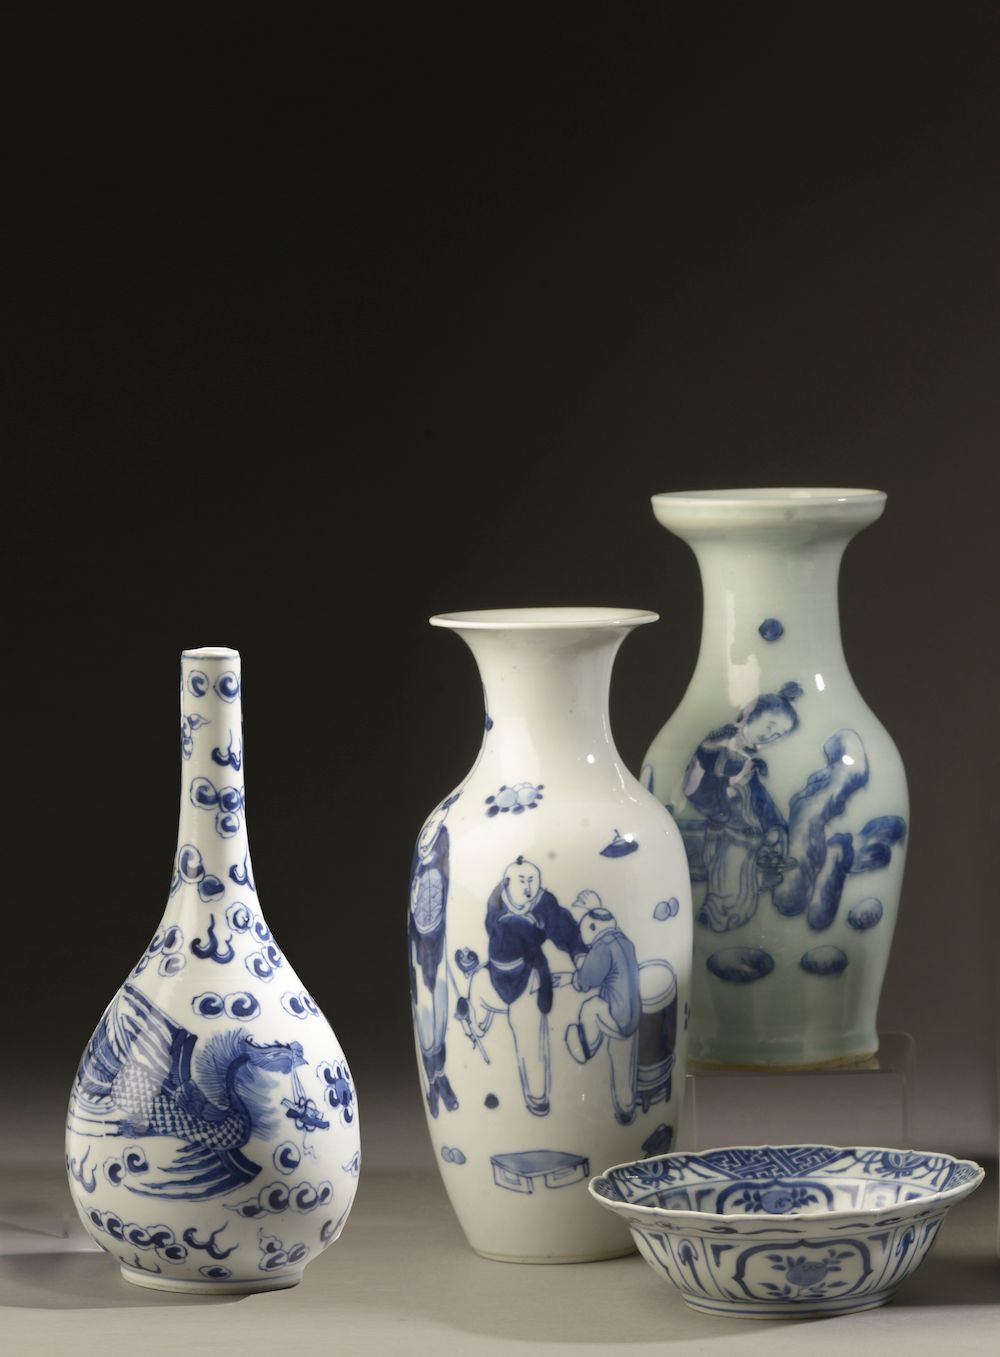 Null CHINA - Um 1900.

Blau-weißes Porzellan-Set mit Figuren, Lotus, Pfauen, Kir&hellip;